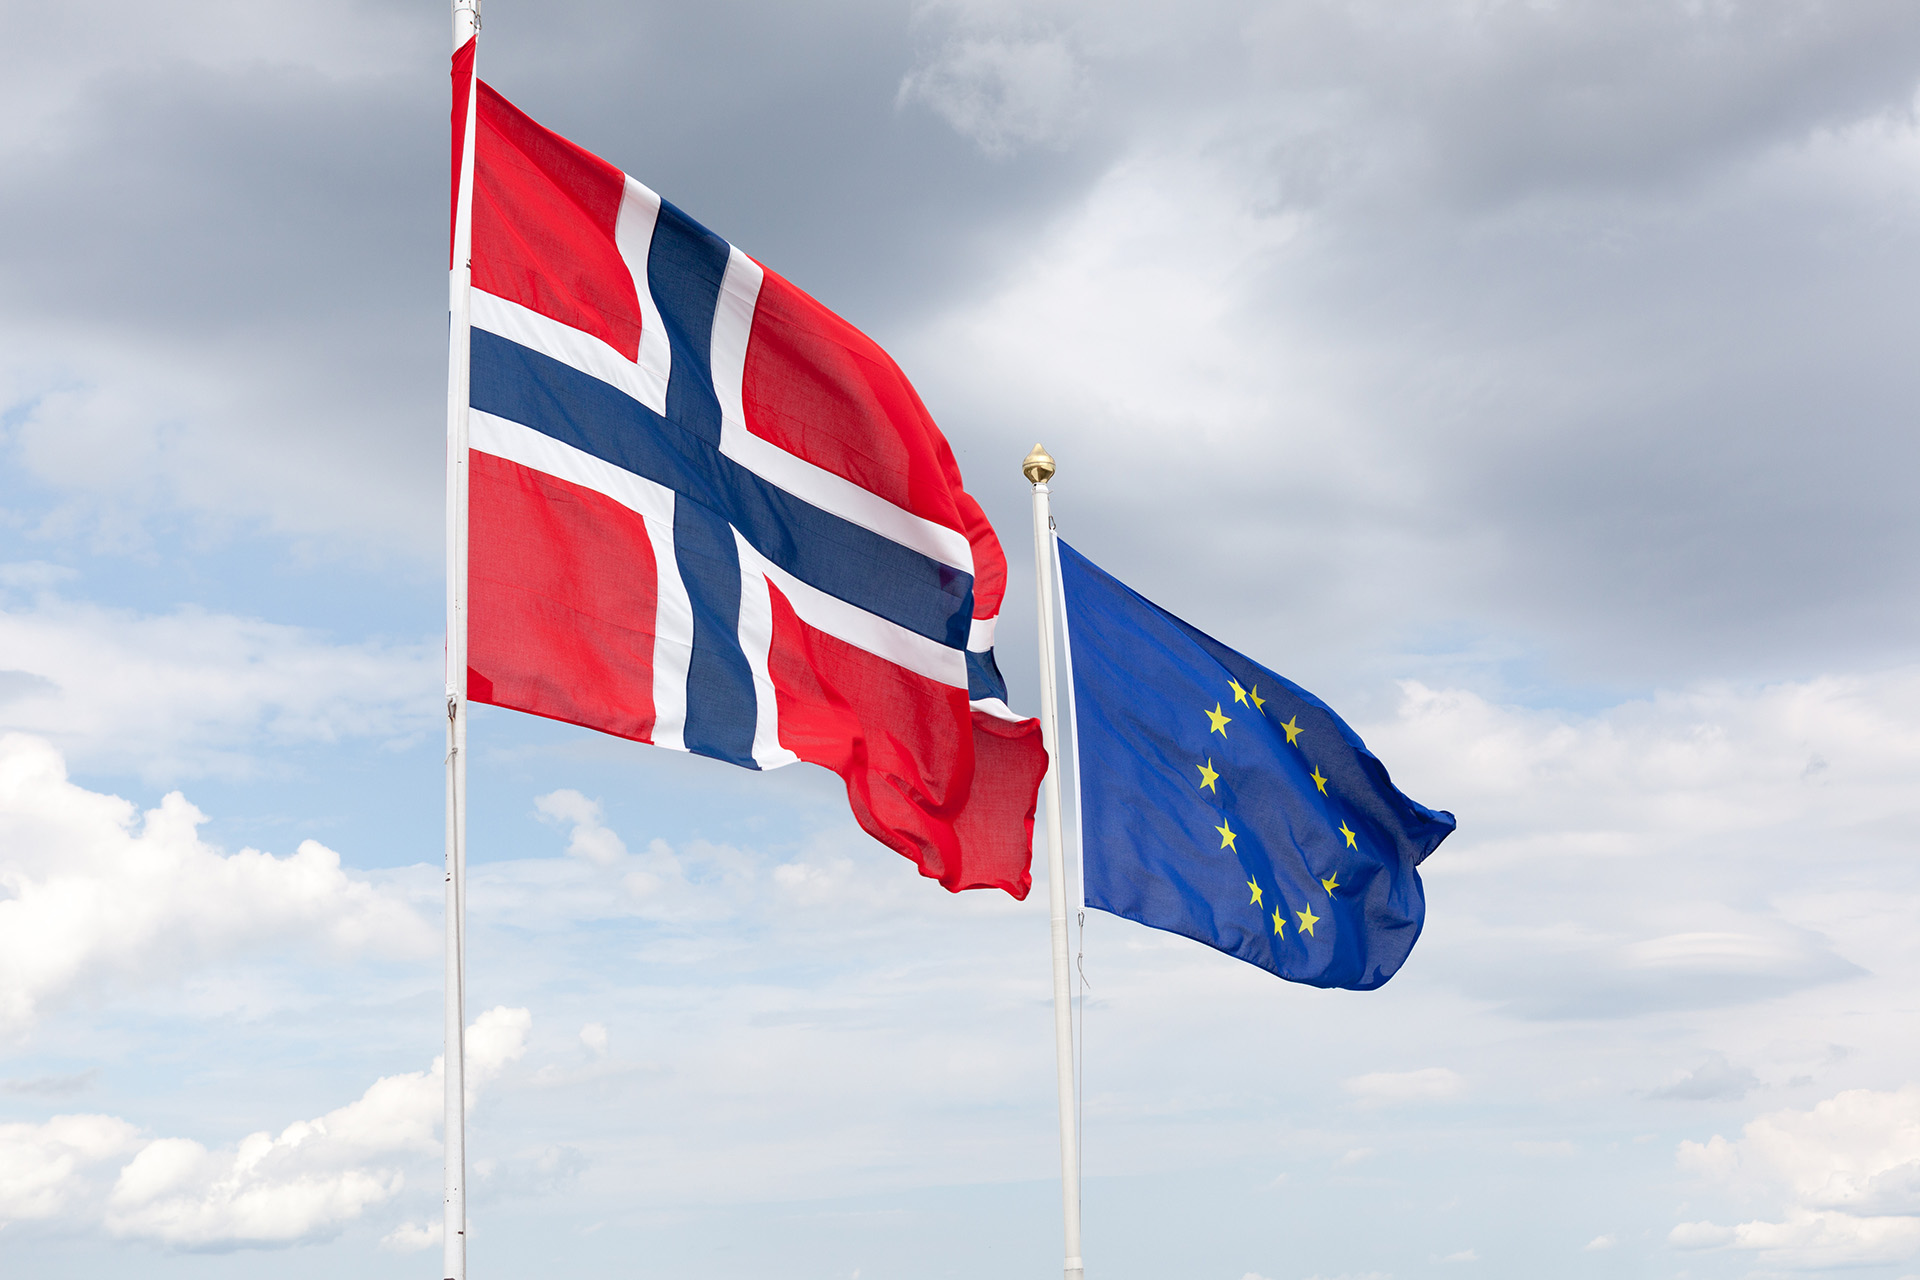 Et norsk flagg vaier i vinden med et flagg for den Europeiske union i bakgrunnen mot en himmel med skyer.